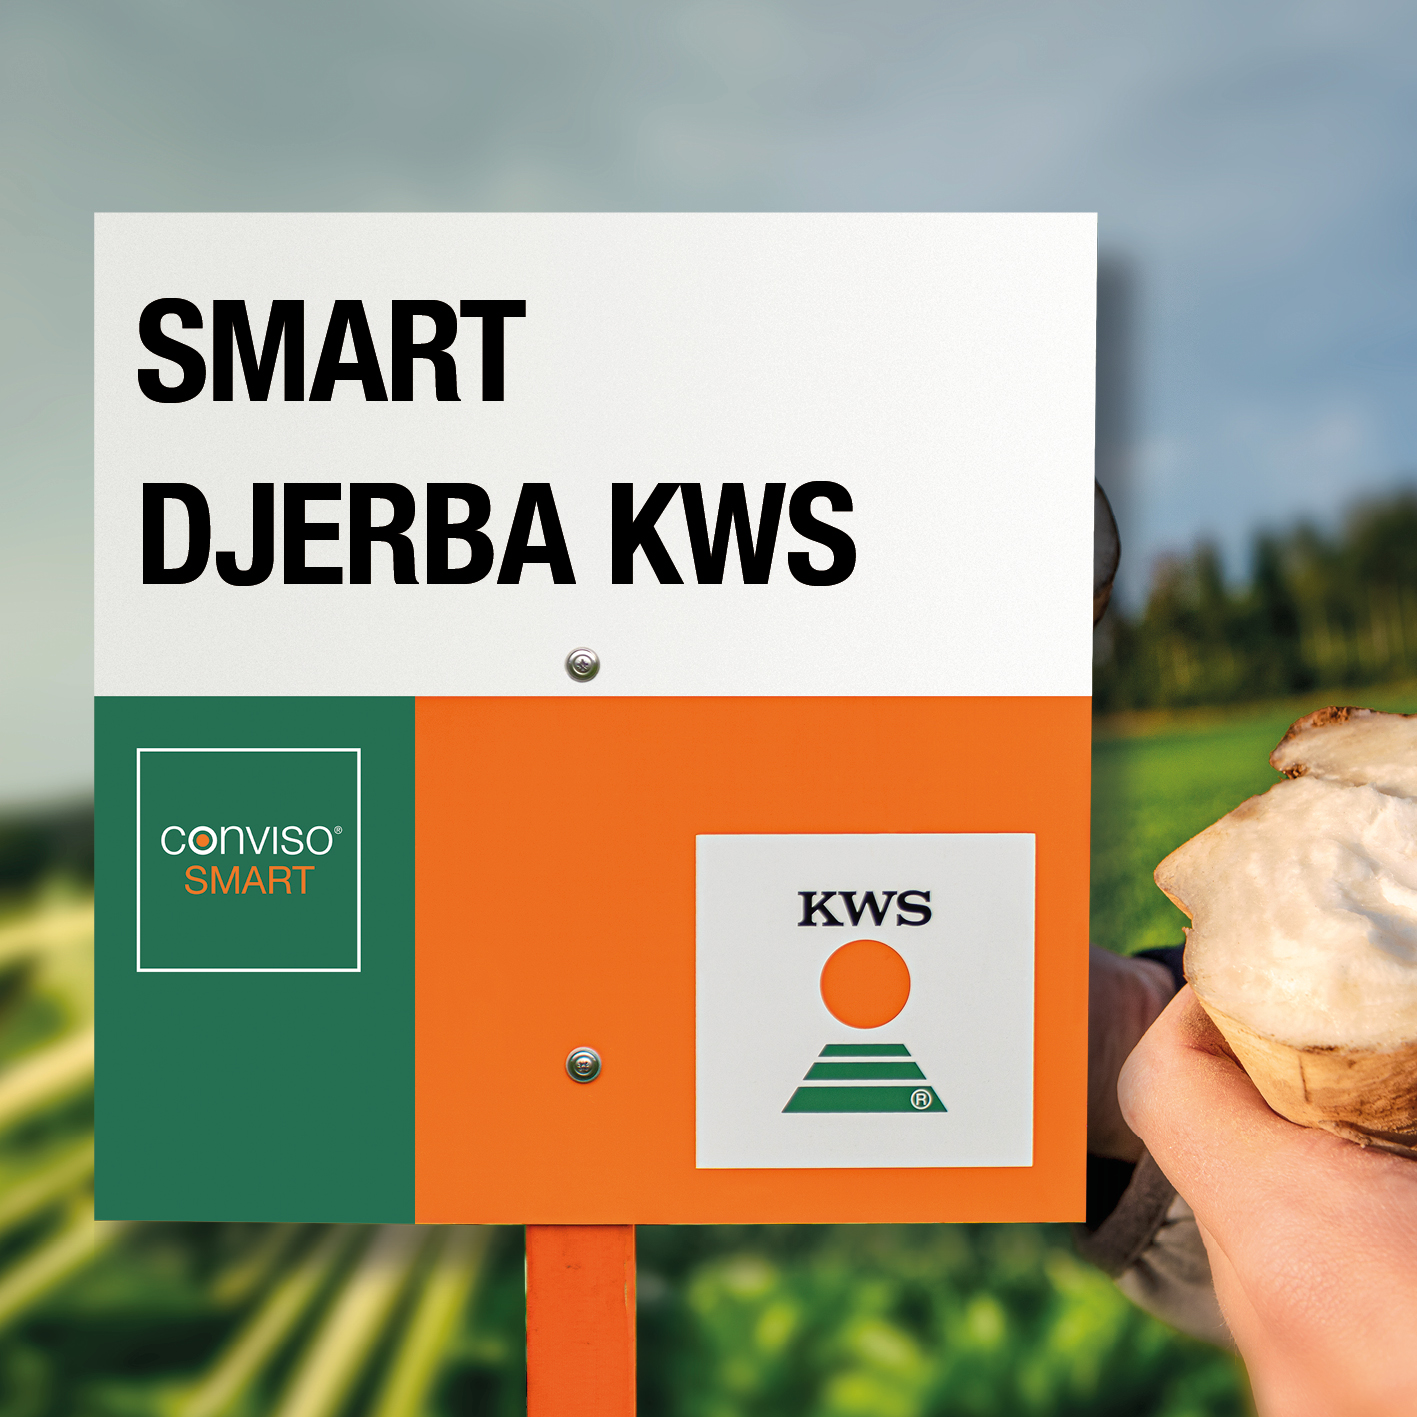 SMART-DJERBA-KWS.jpg